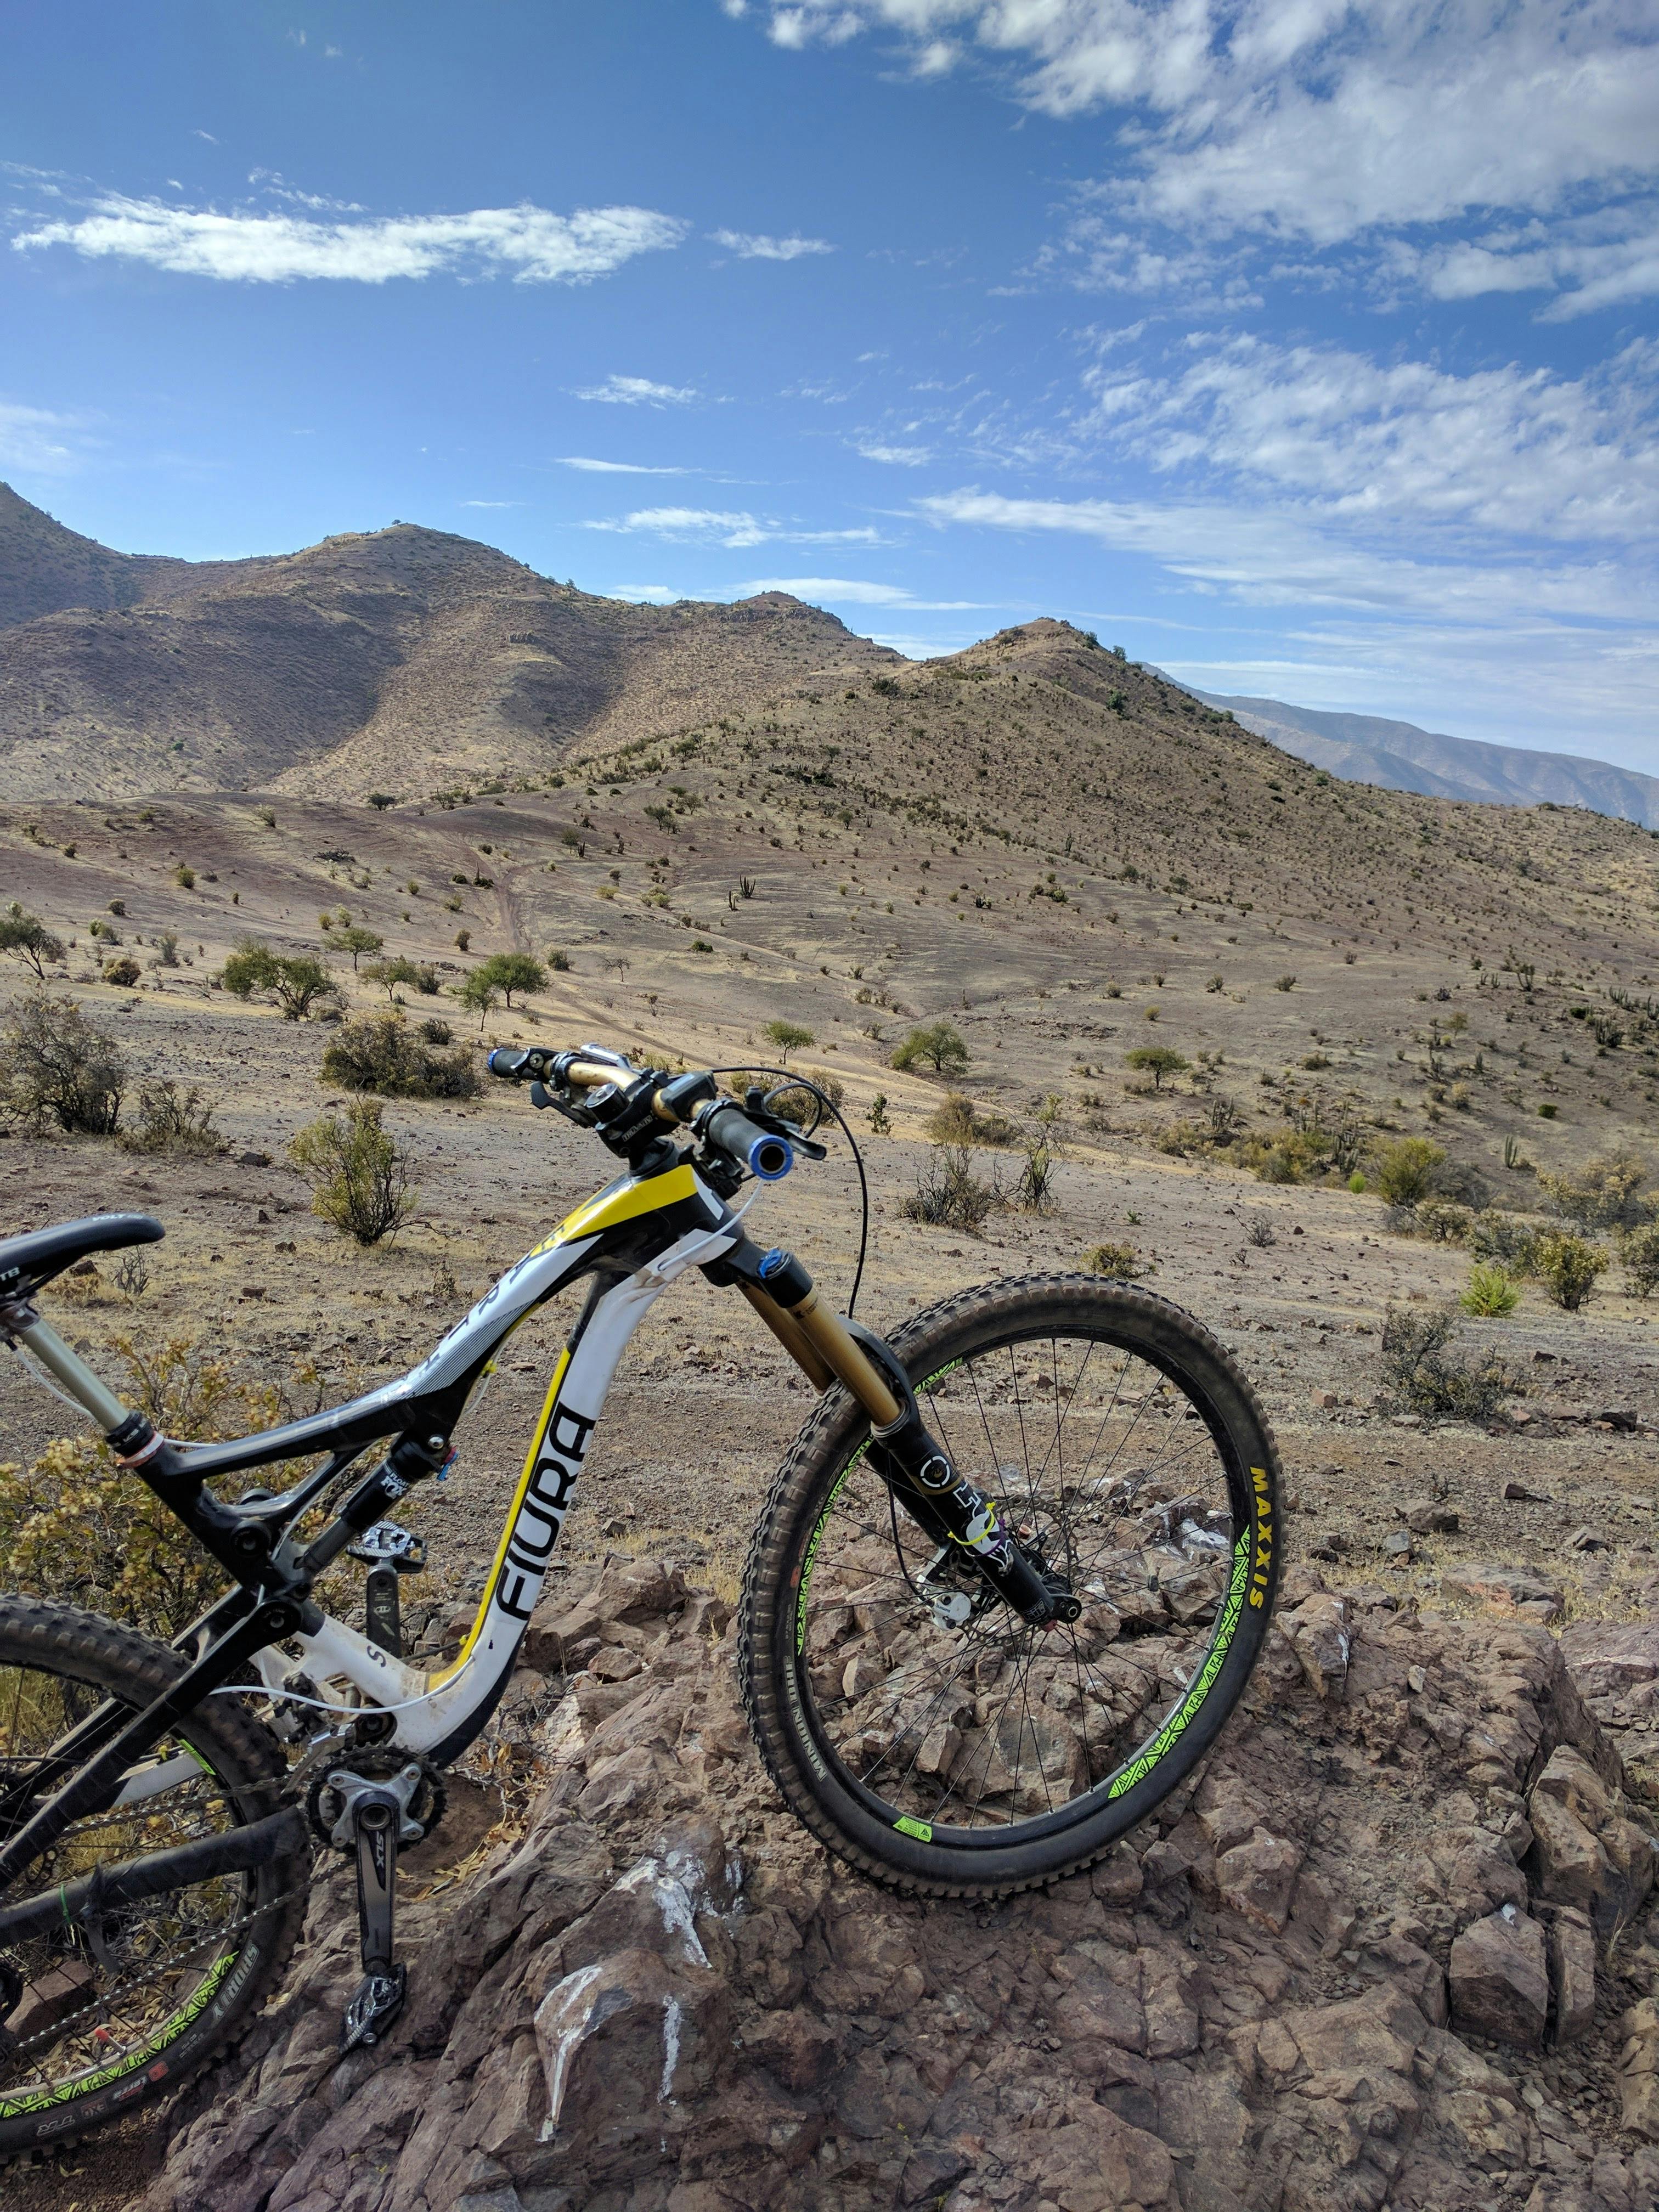 Free stock photo of bike, chile, desert